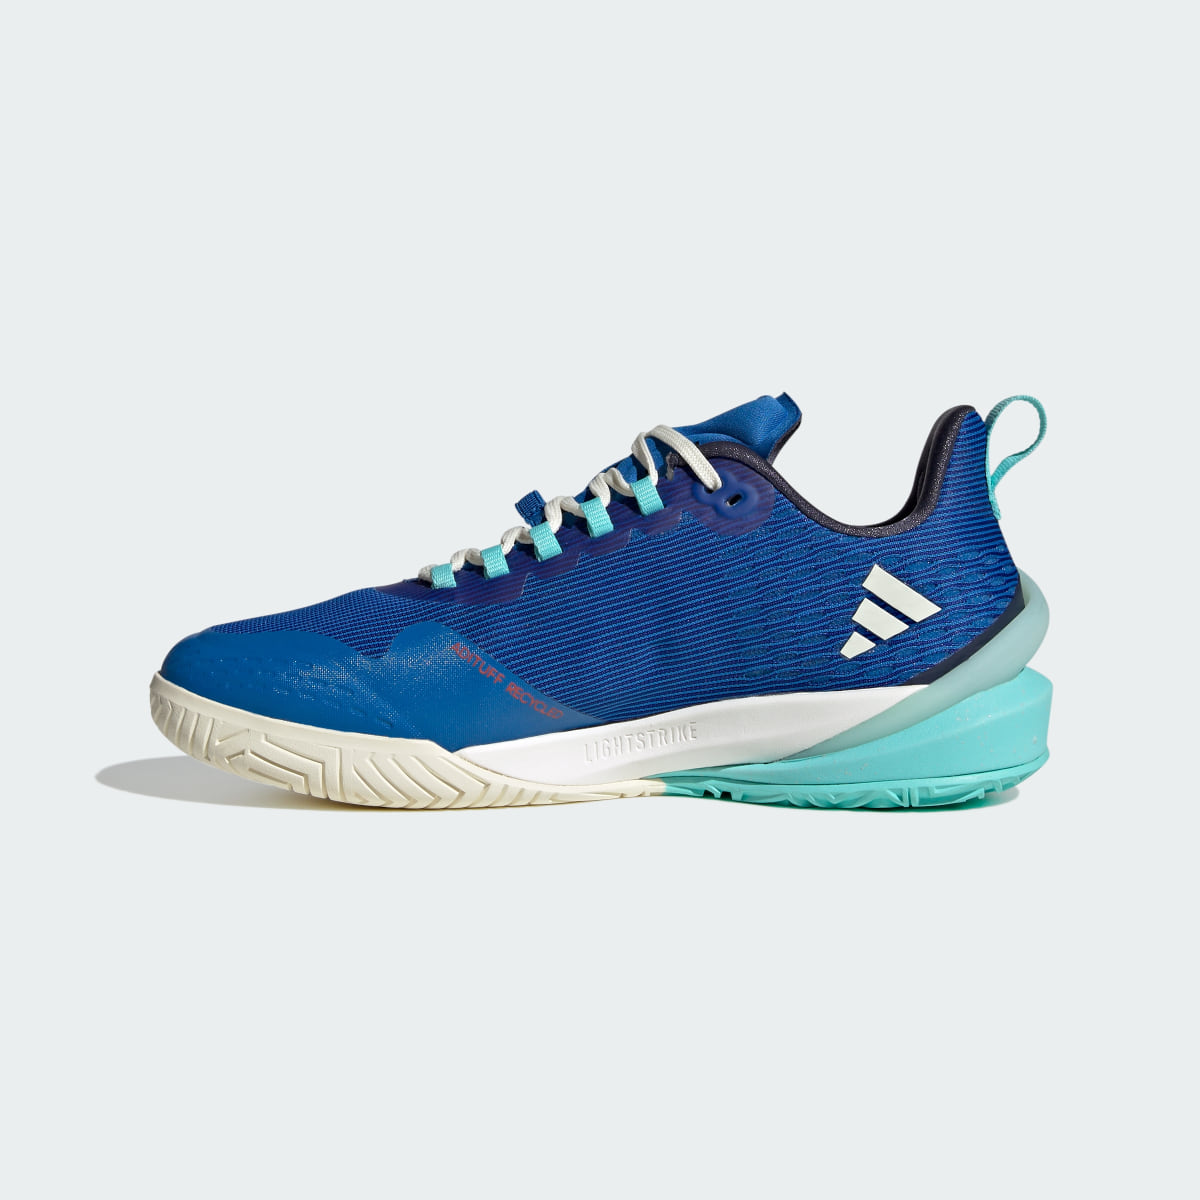 Adidas adizero Cybersonic Tennis Shoes. 7